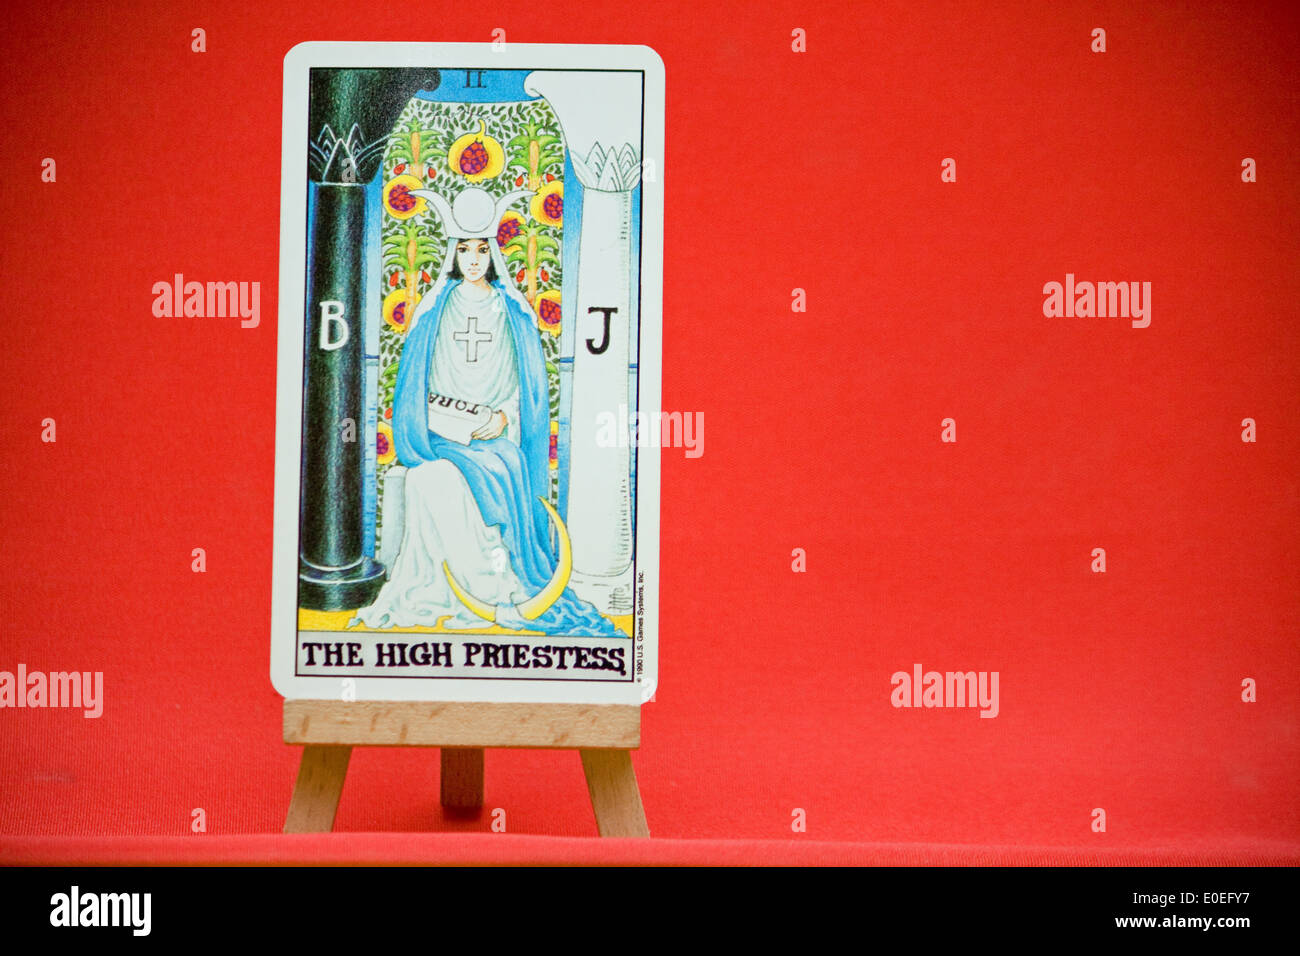 The High Priestess. A major arcana tarot card. Stock Photo